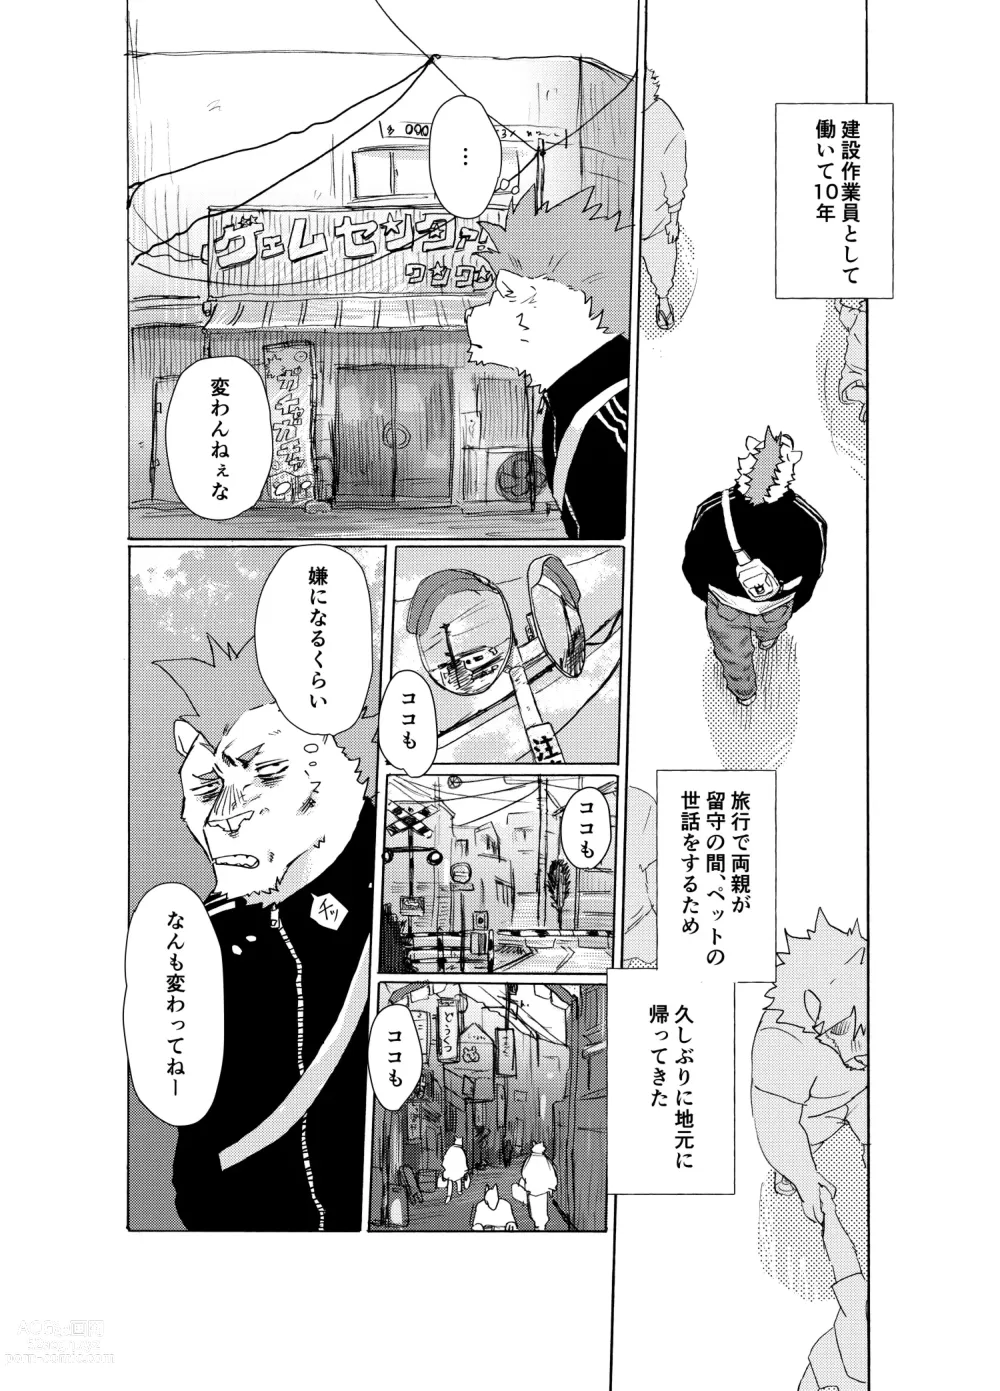 Page 3 of manga BAD Memories